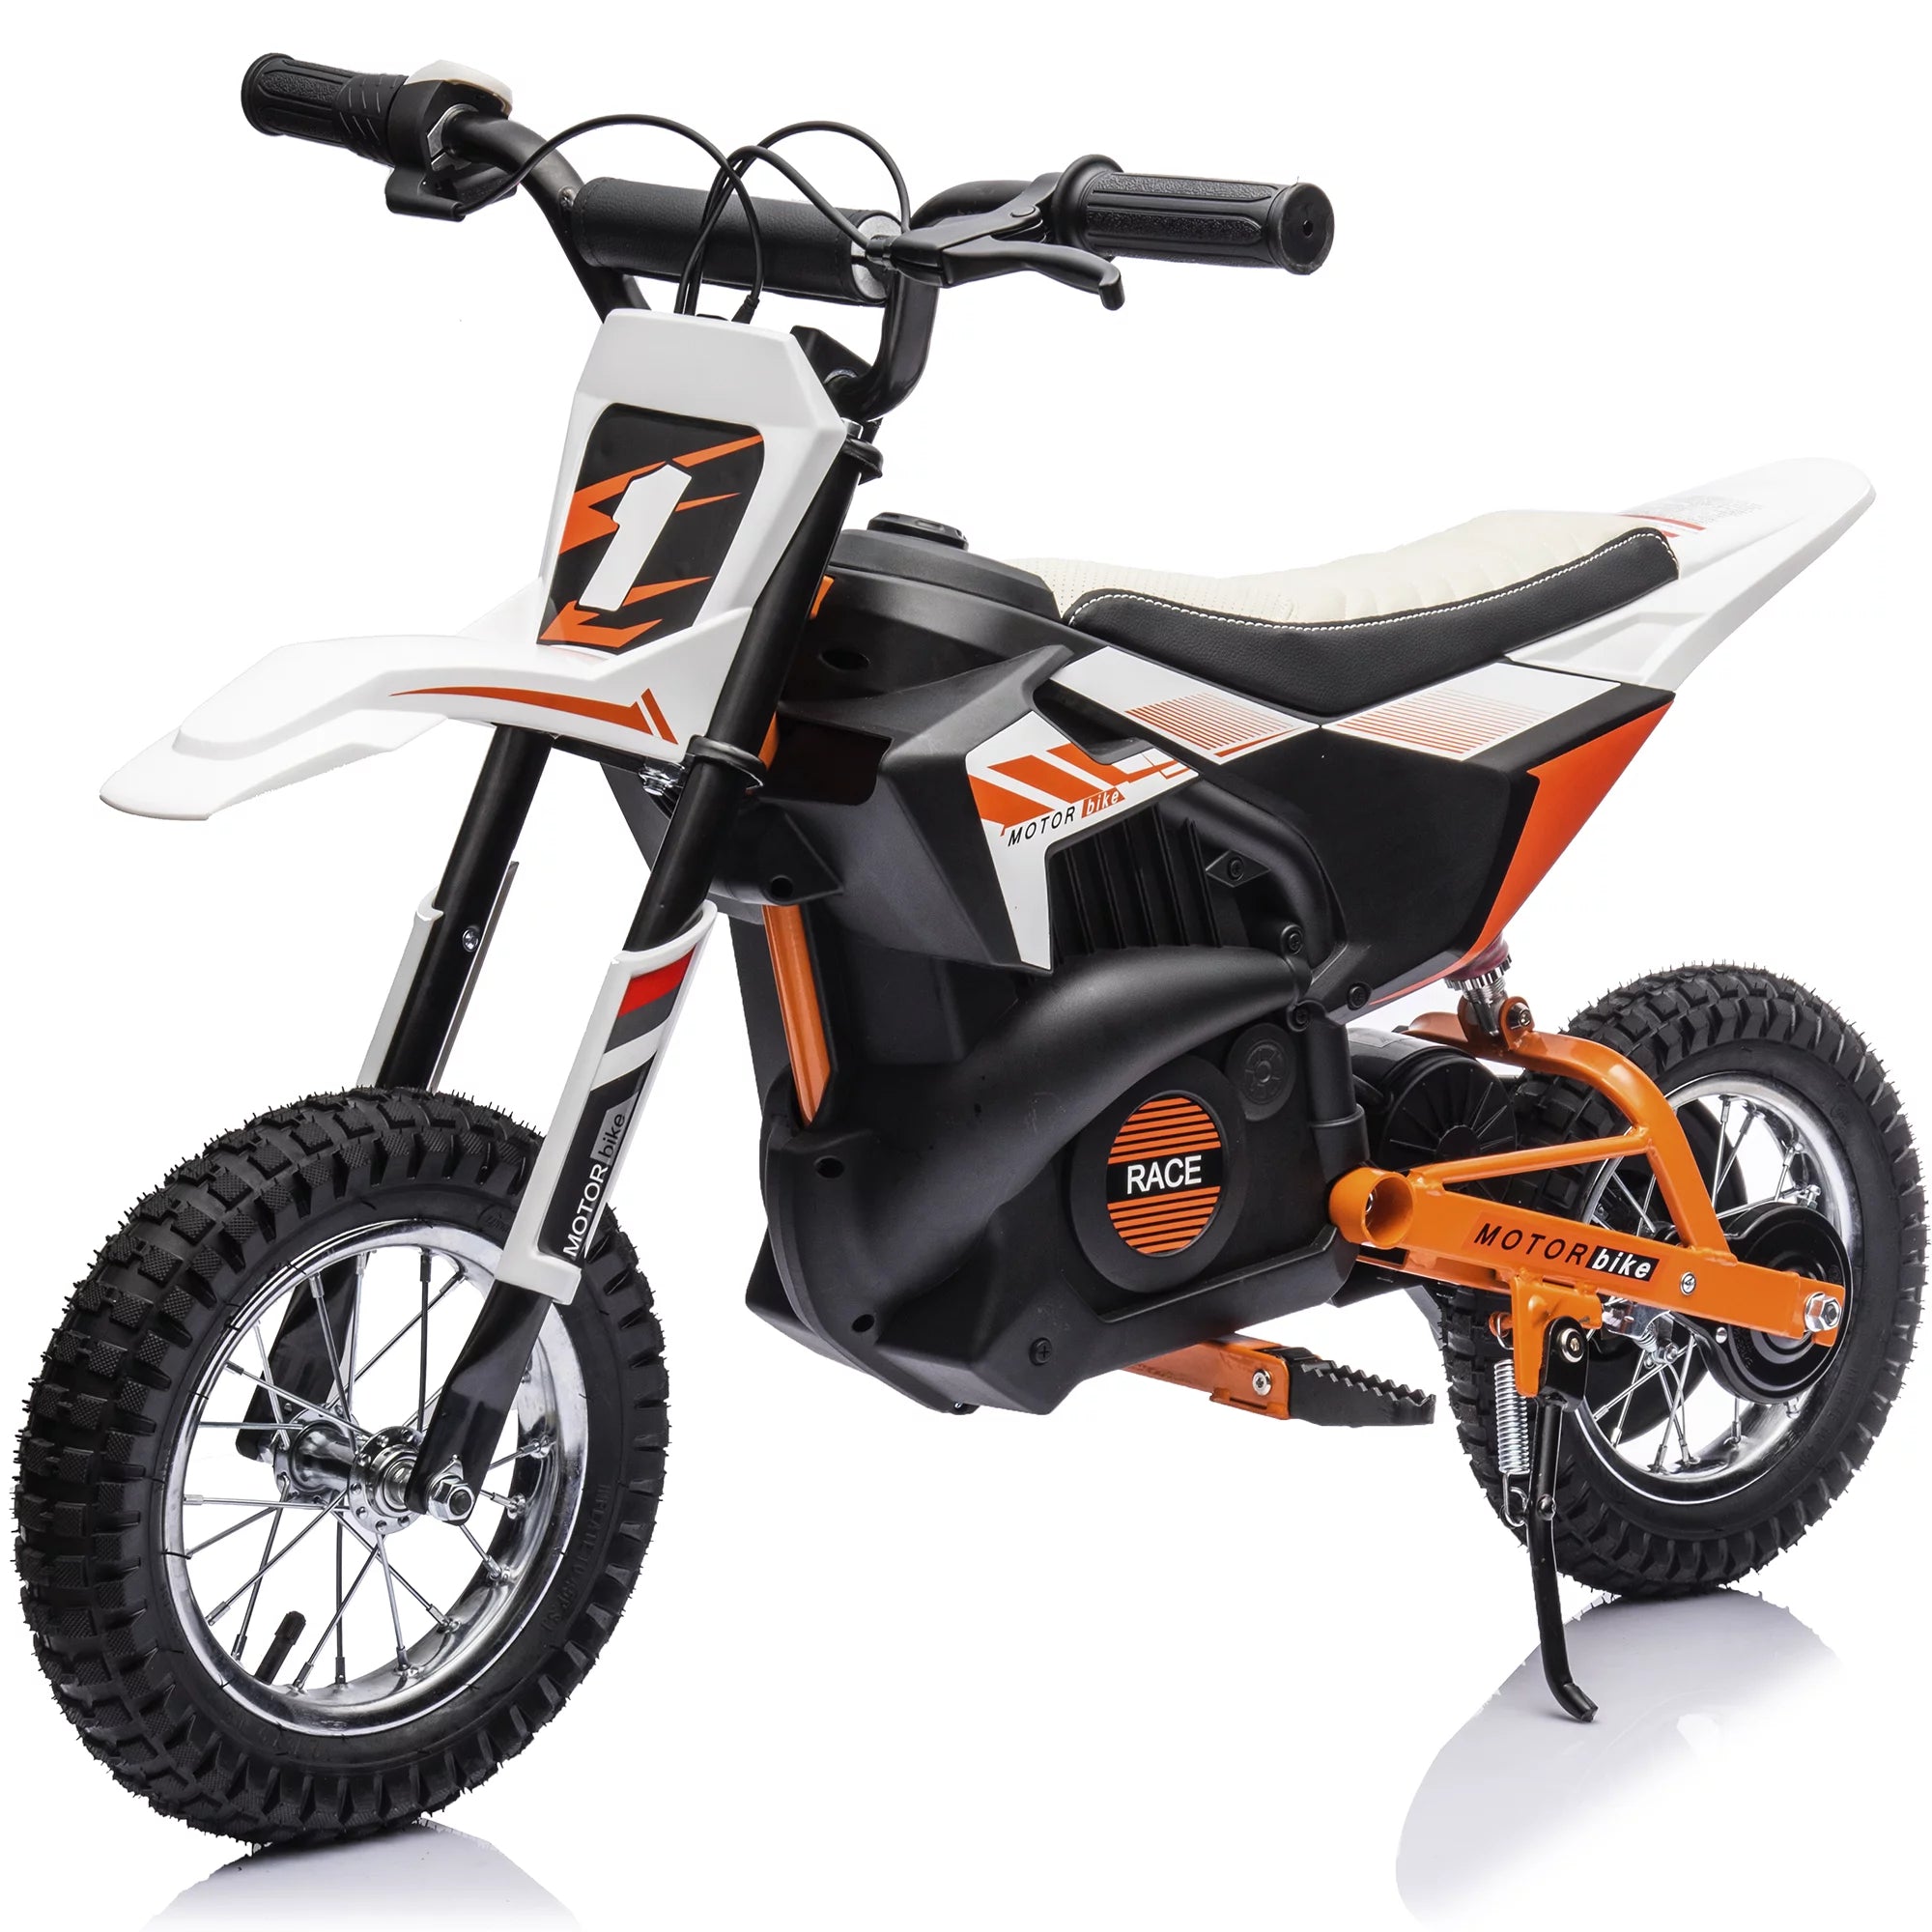 Pocket bike 500W MX moto électrique enfant - Quads Motos Familly